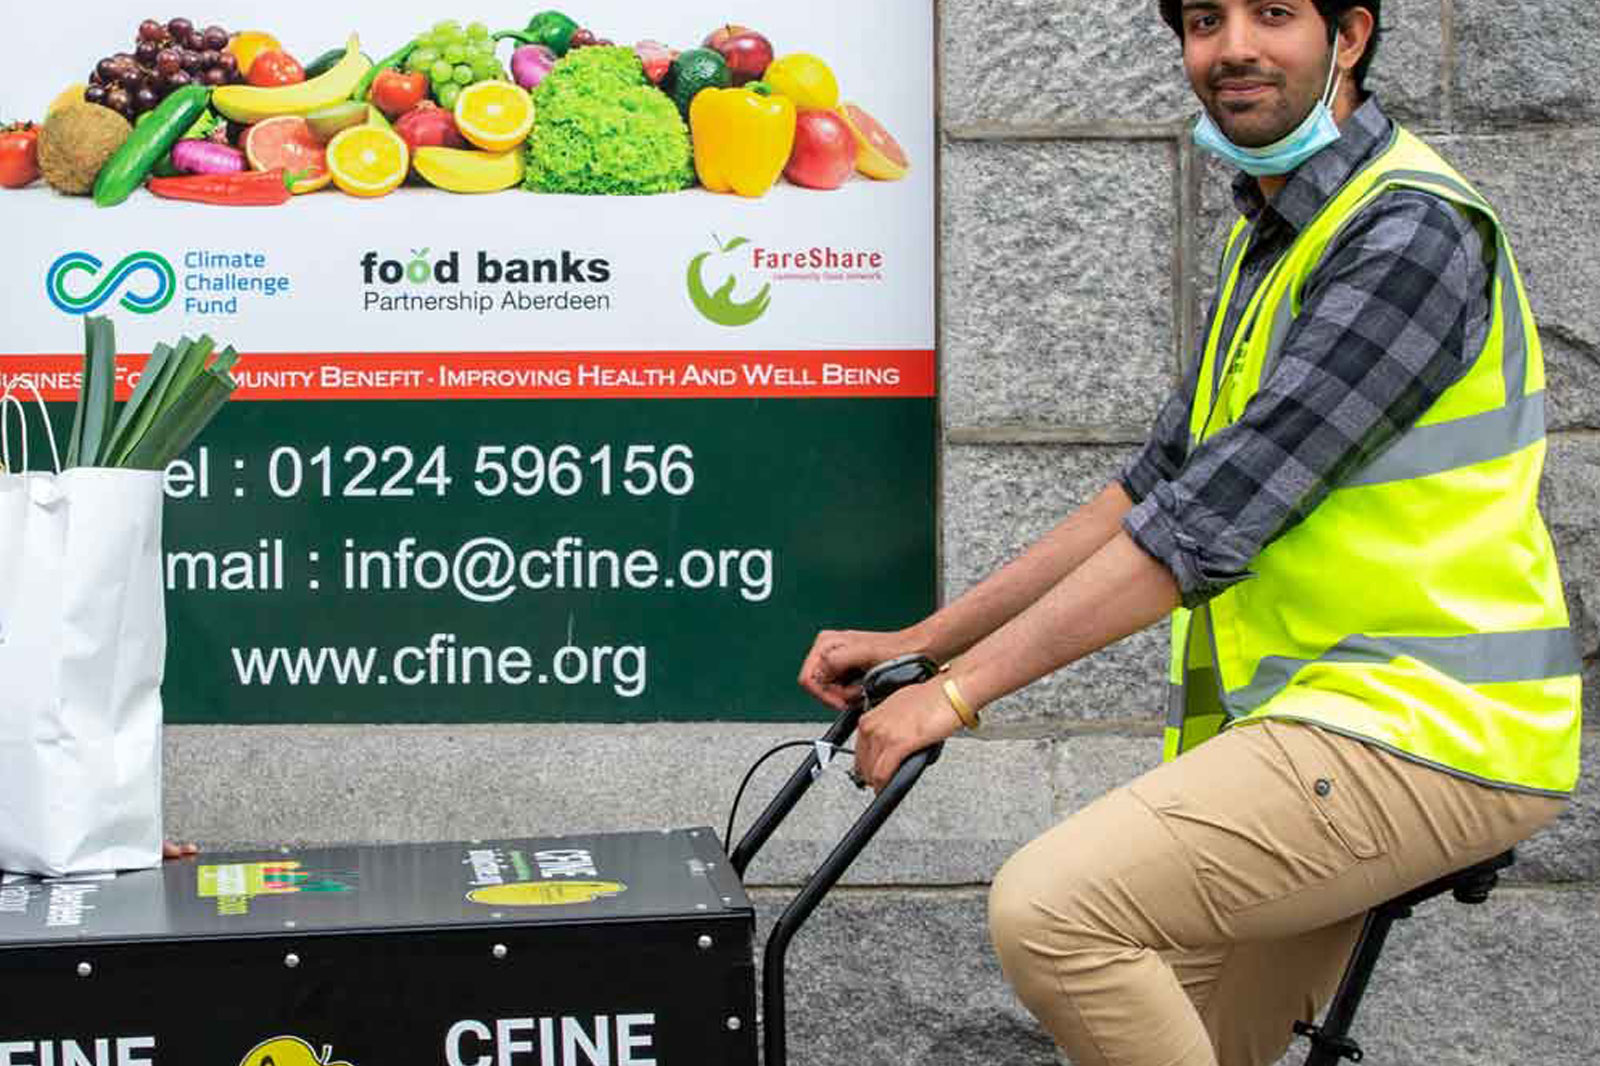 Cfine e-bike deliveries